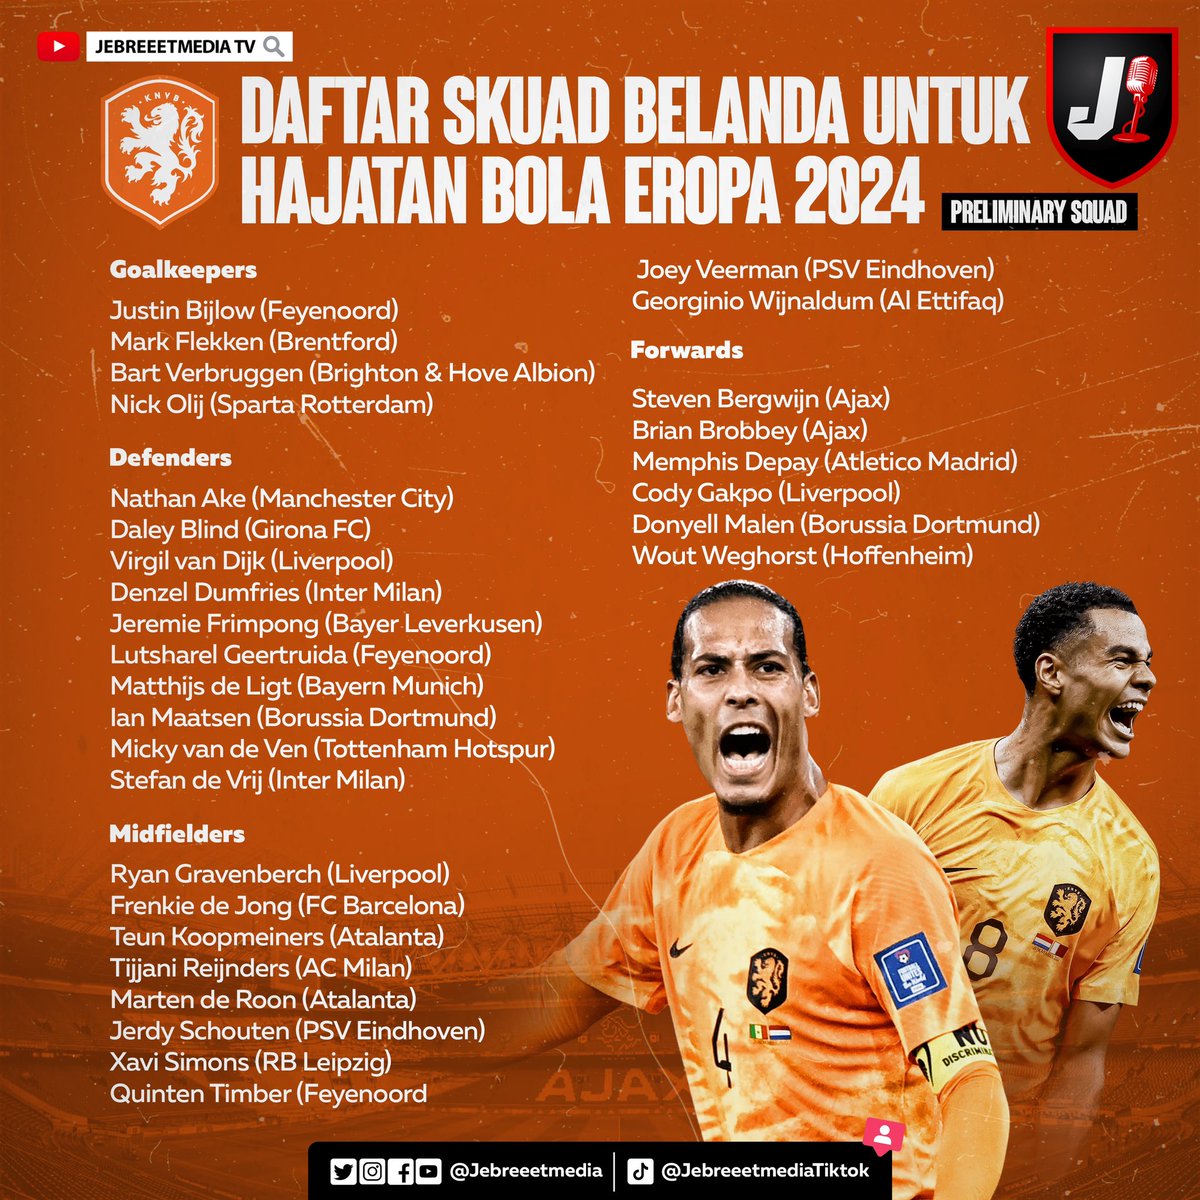 Inilah daftar pemain Belanda yang akan ikut Hajatan Bola Eropa 2024. Masih ada beberapa nama yang akan dicoret pada ajang ini. Siapa saja ya?🤔